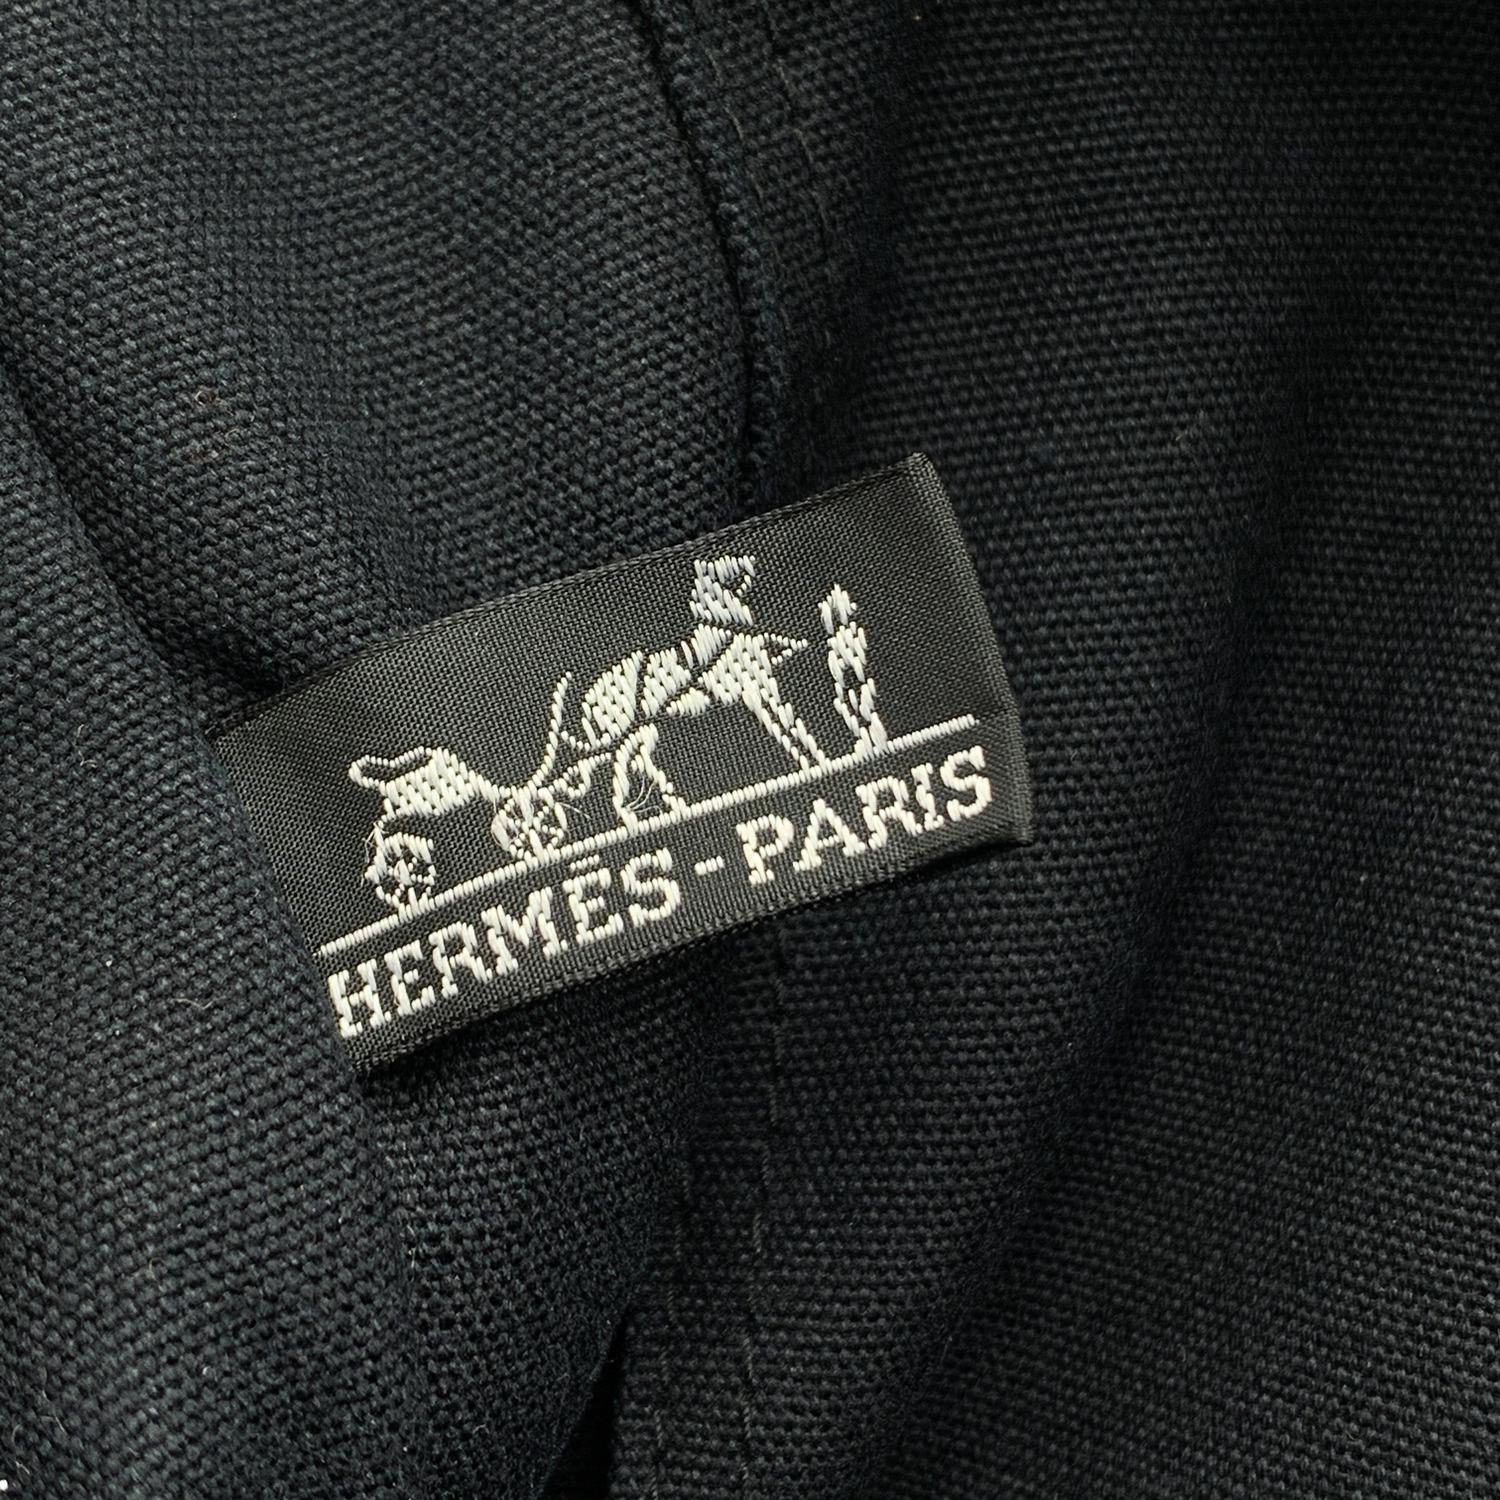 Hermes Paris Vintage Black Cotton Fourre Tout MM Bag Tote 8